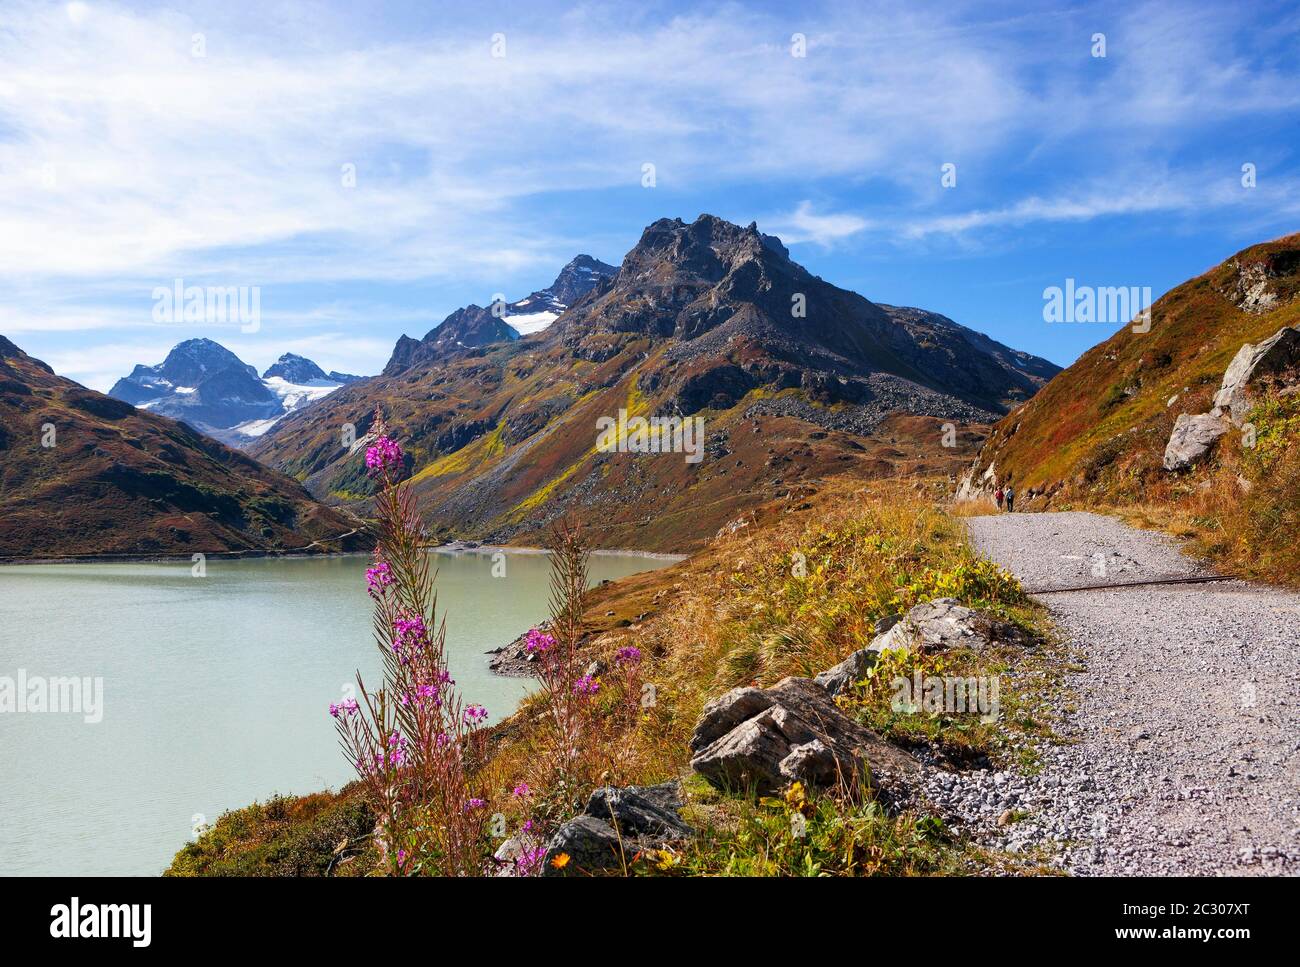 Hiking trail around the lake, Bielerhoehe, Silvrettasee, Silvretta reservoir, Silvretta Group, Vorarlberg, Austria Stock Photo